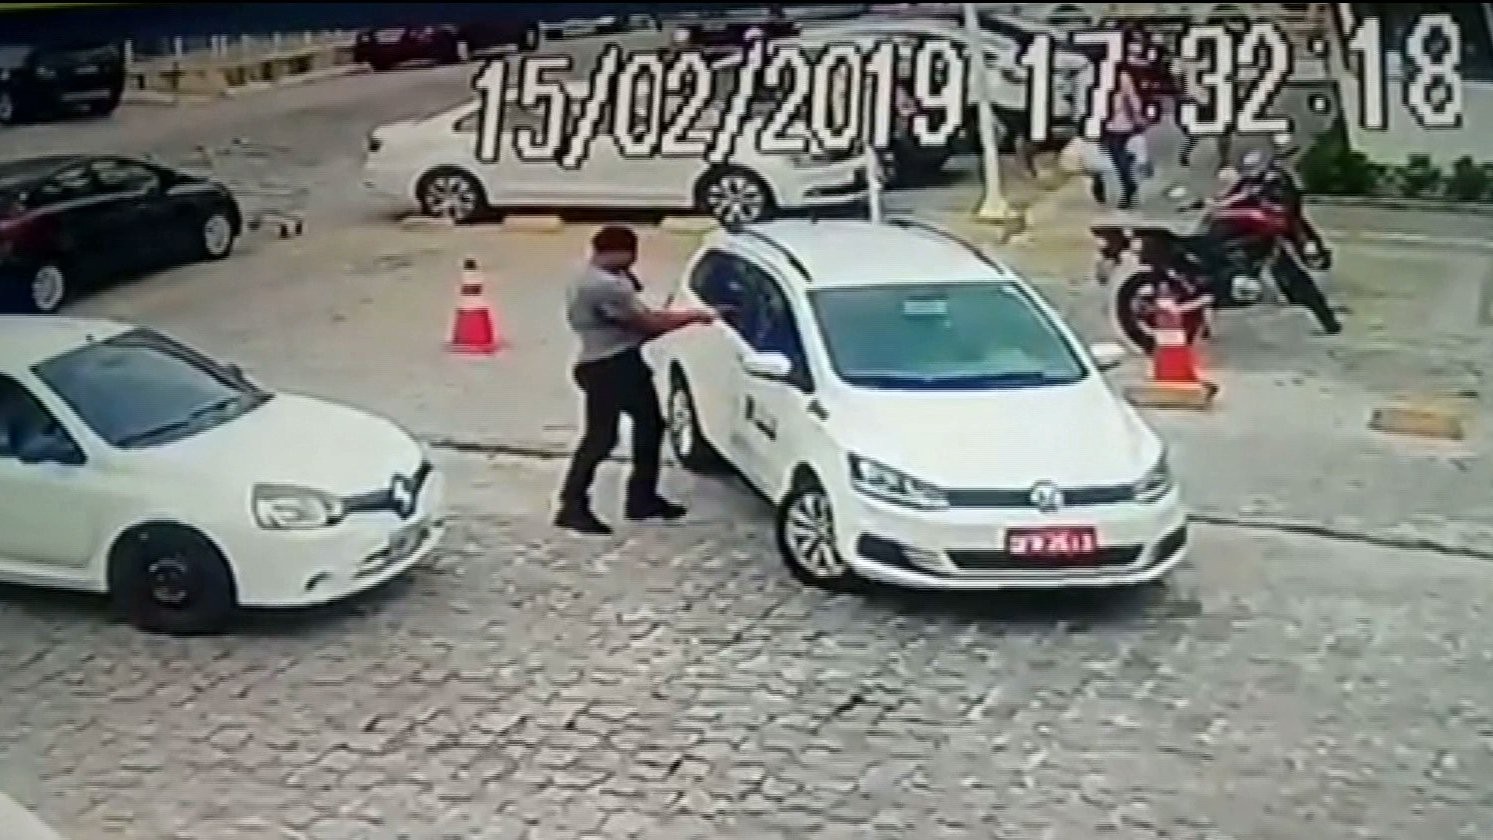 Condenado por matar taxista em discussão de trânsito passa para regime semiaberto em João Pessoa